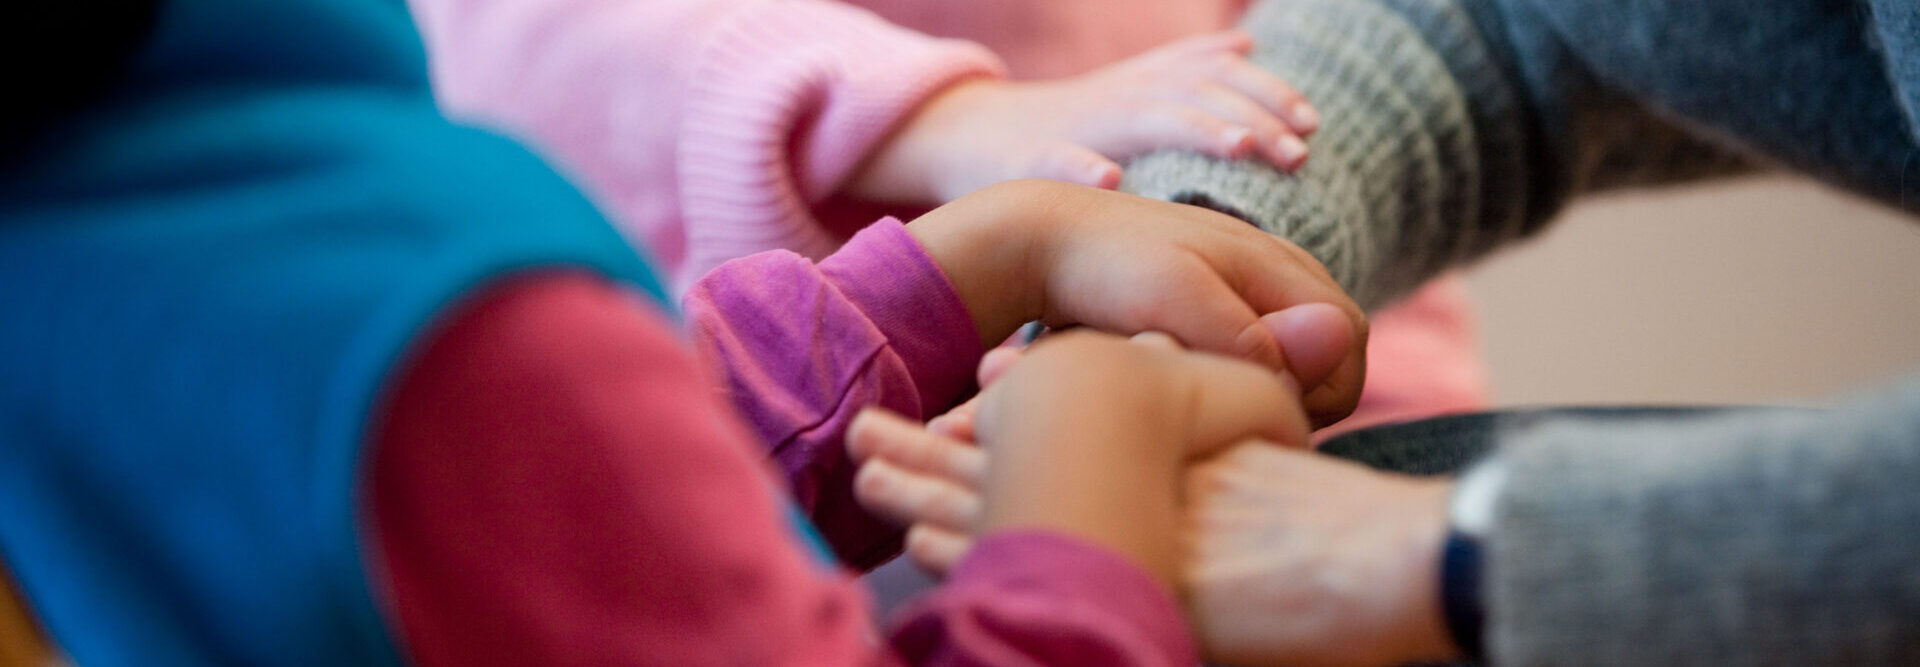 Les mains d'un enfant reposent sur celles d'une personne adulte. La main d'un autre enfant est posée sur le bras de l'adulte. L'image rayonne d'intimité et de confiance et vit sur des nuances chaudes de gris-rose-pourpre-bleu.